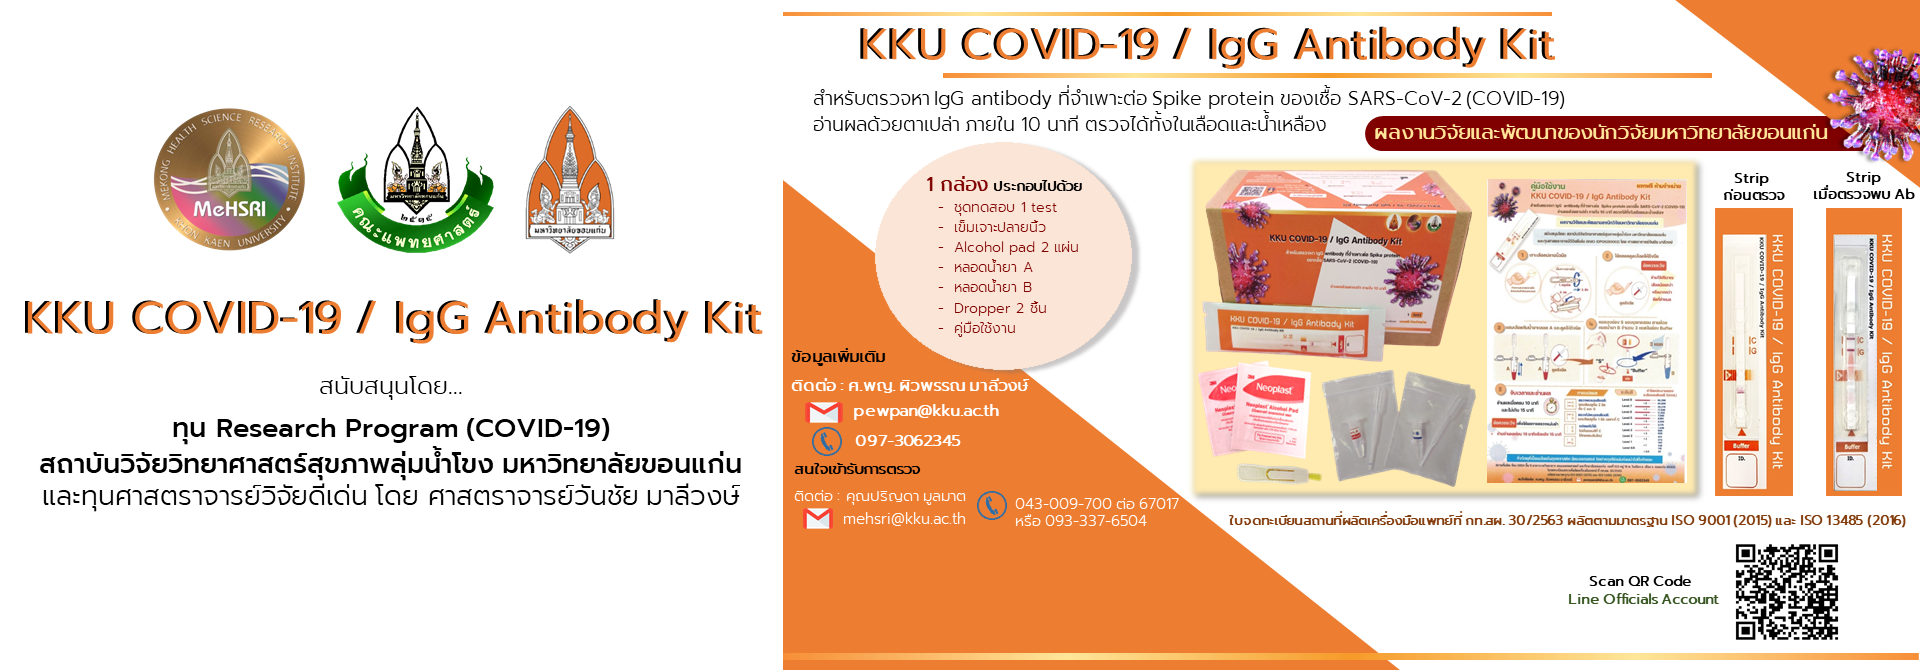 KKU COVID-19 / IgG Antibody Kit